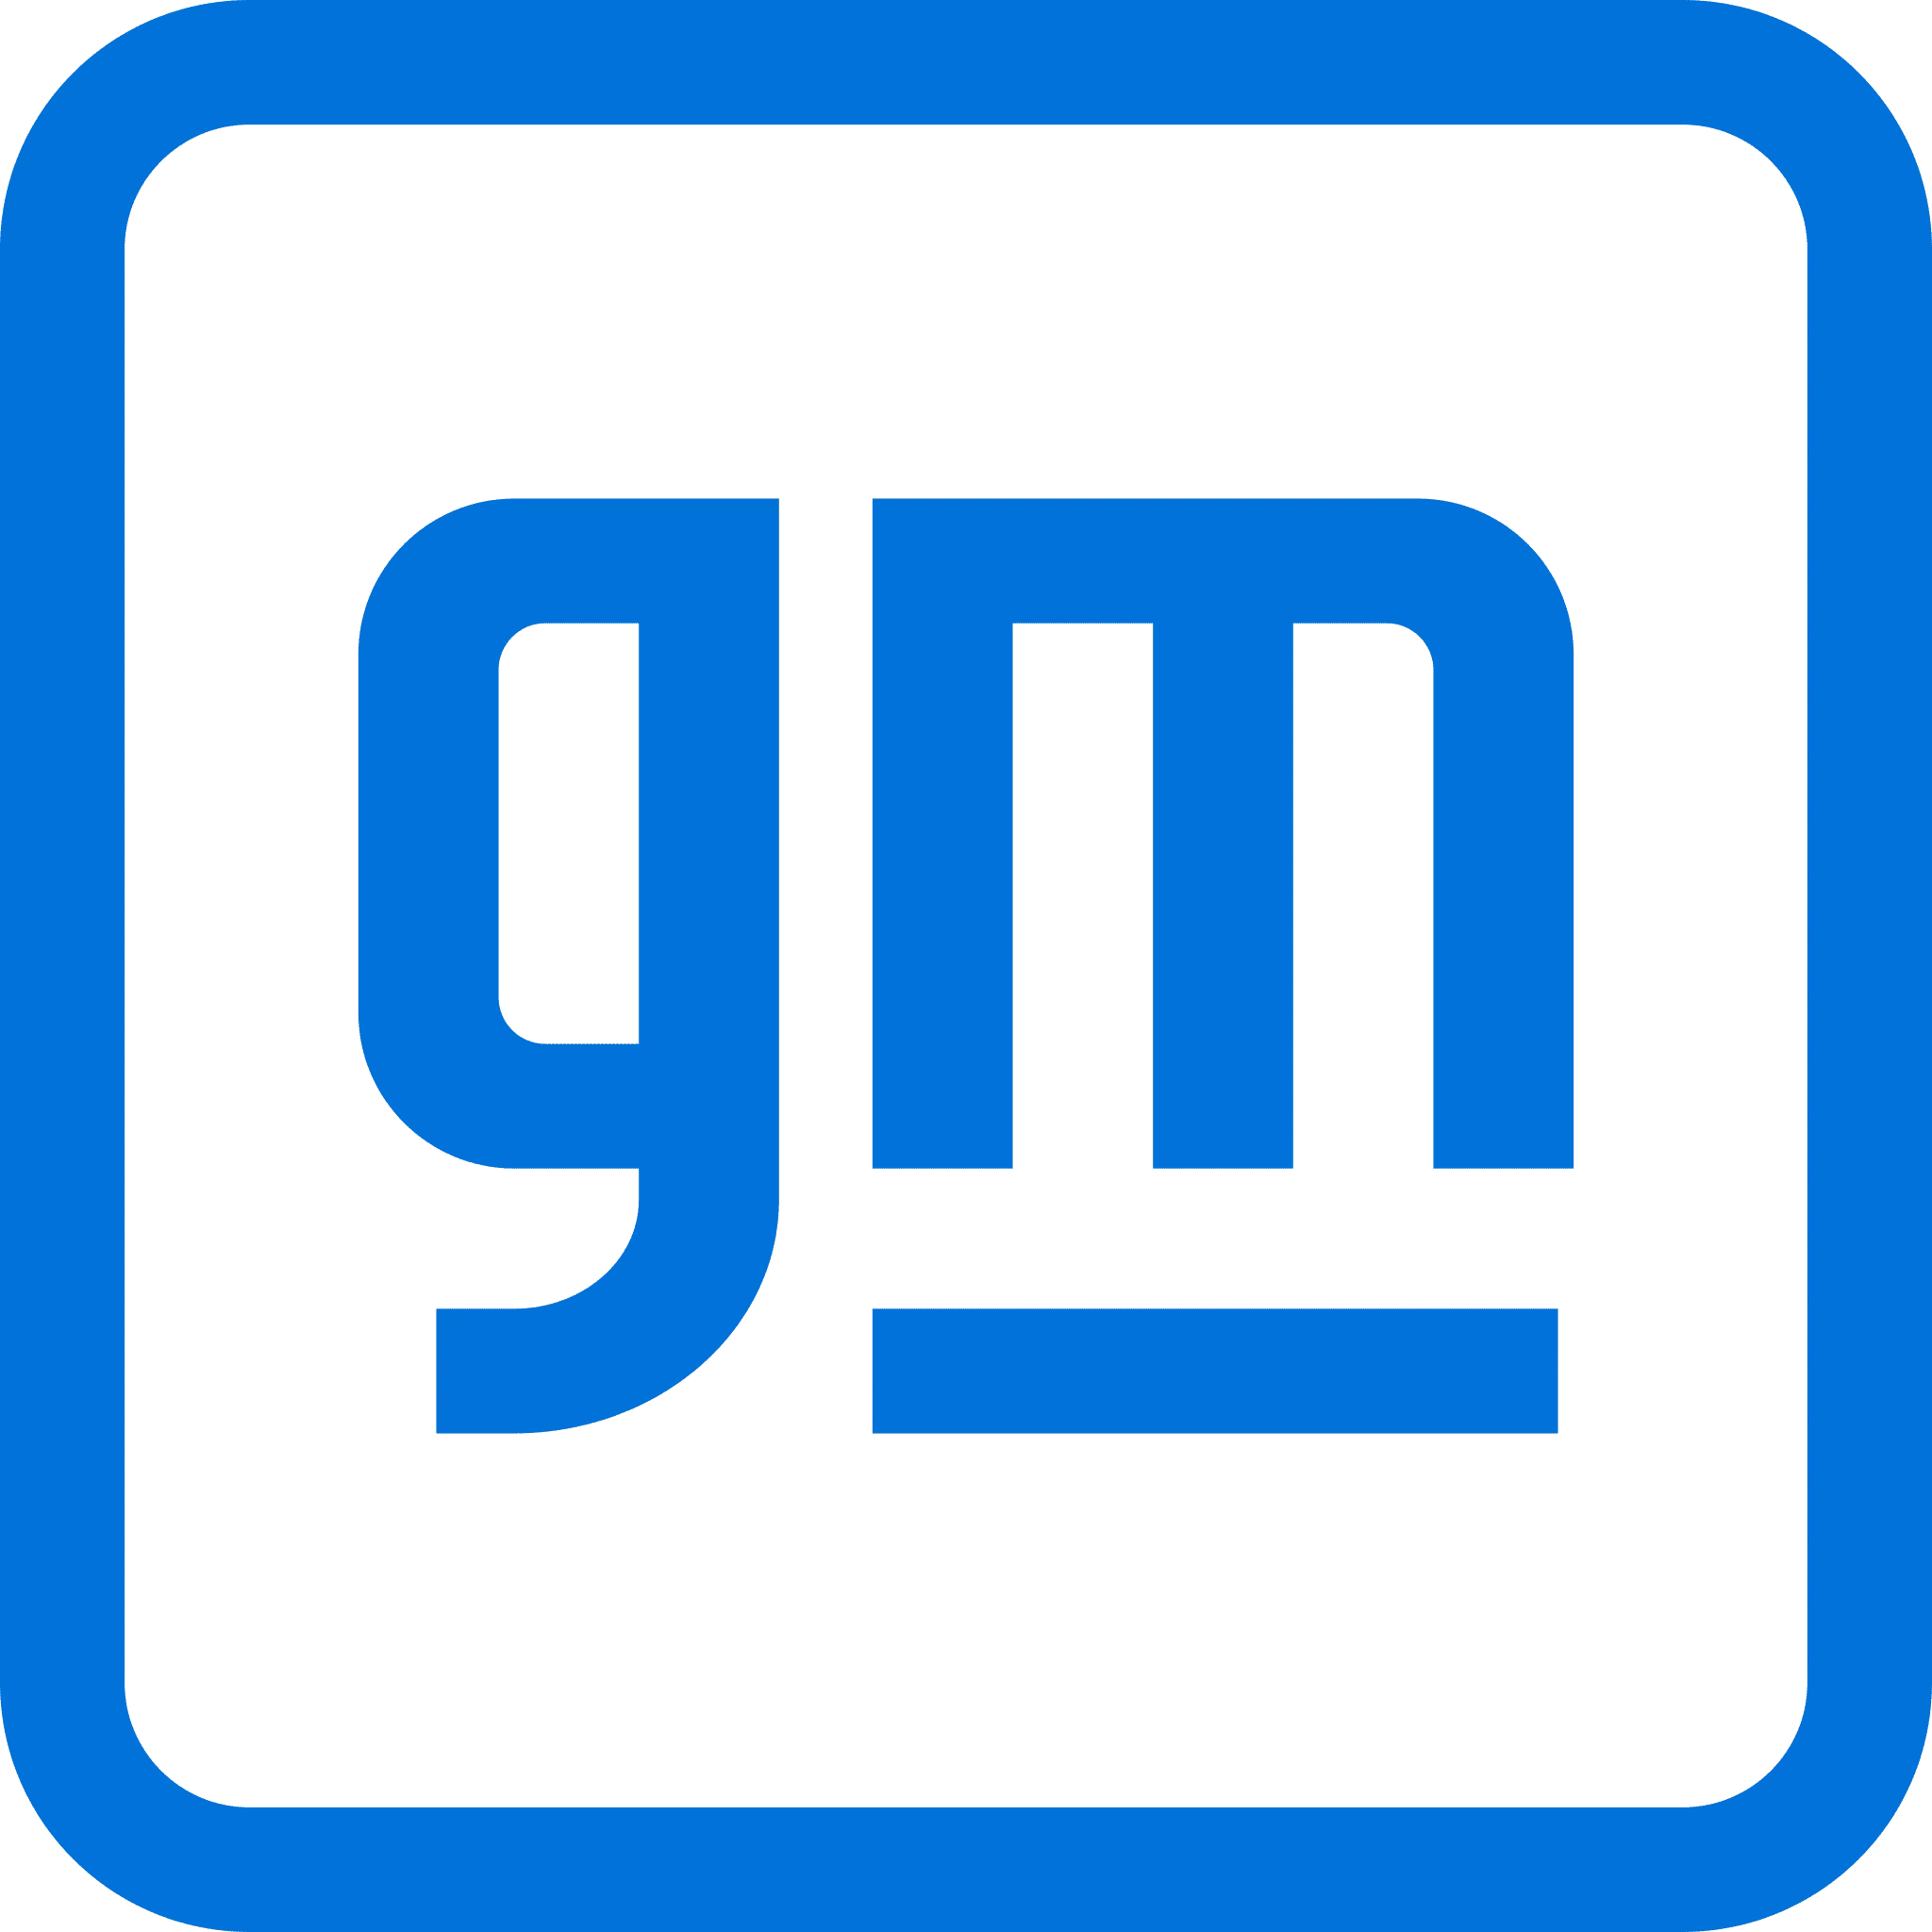 General_Motors